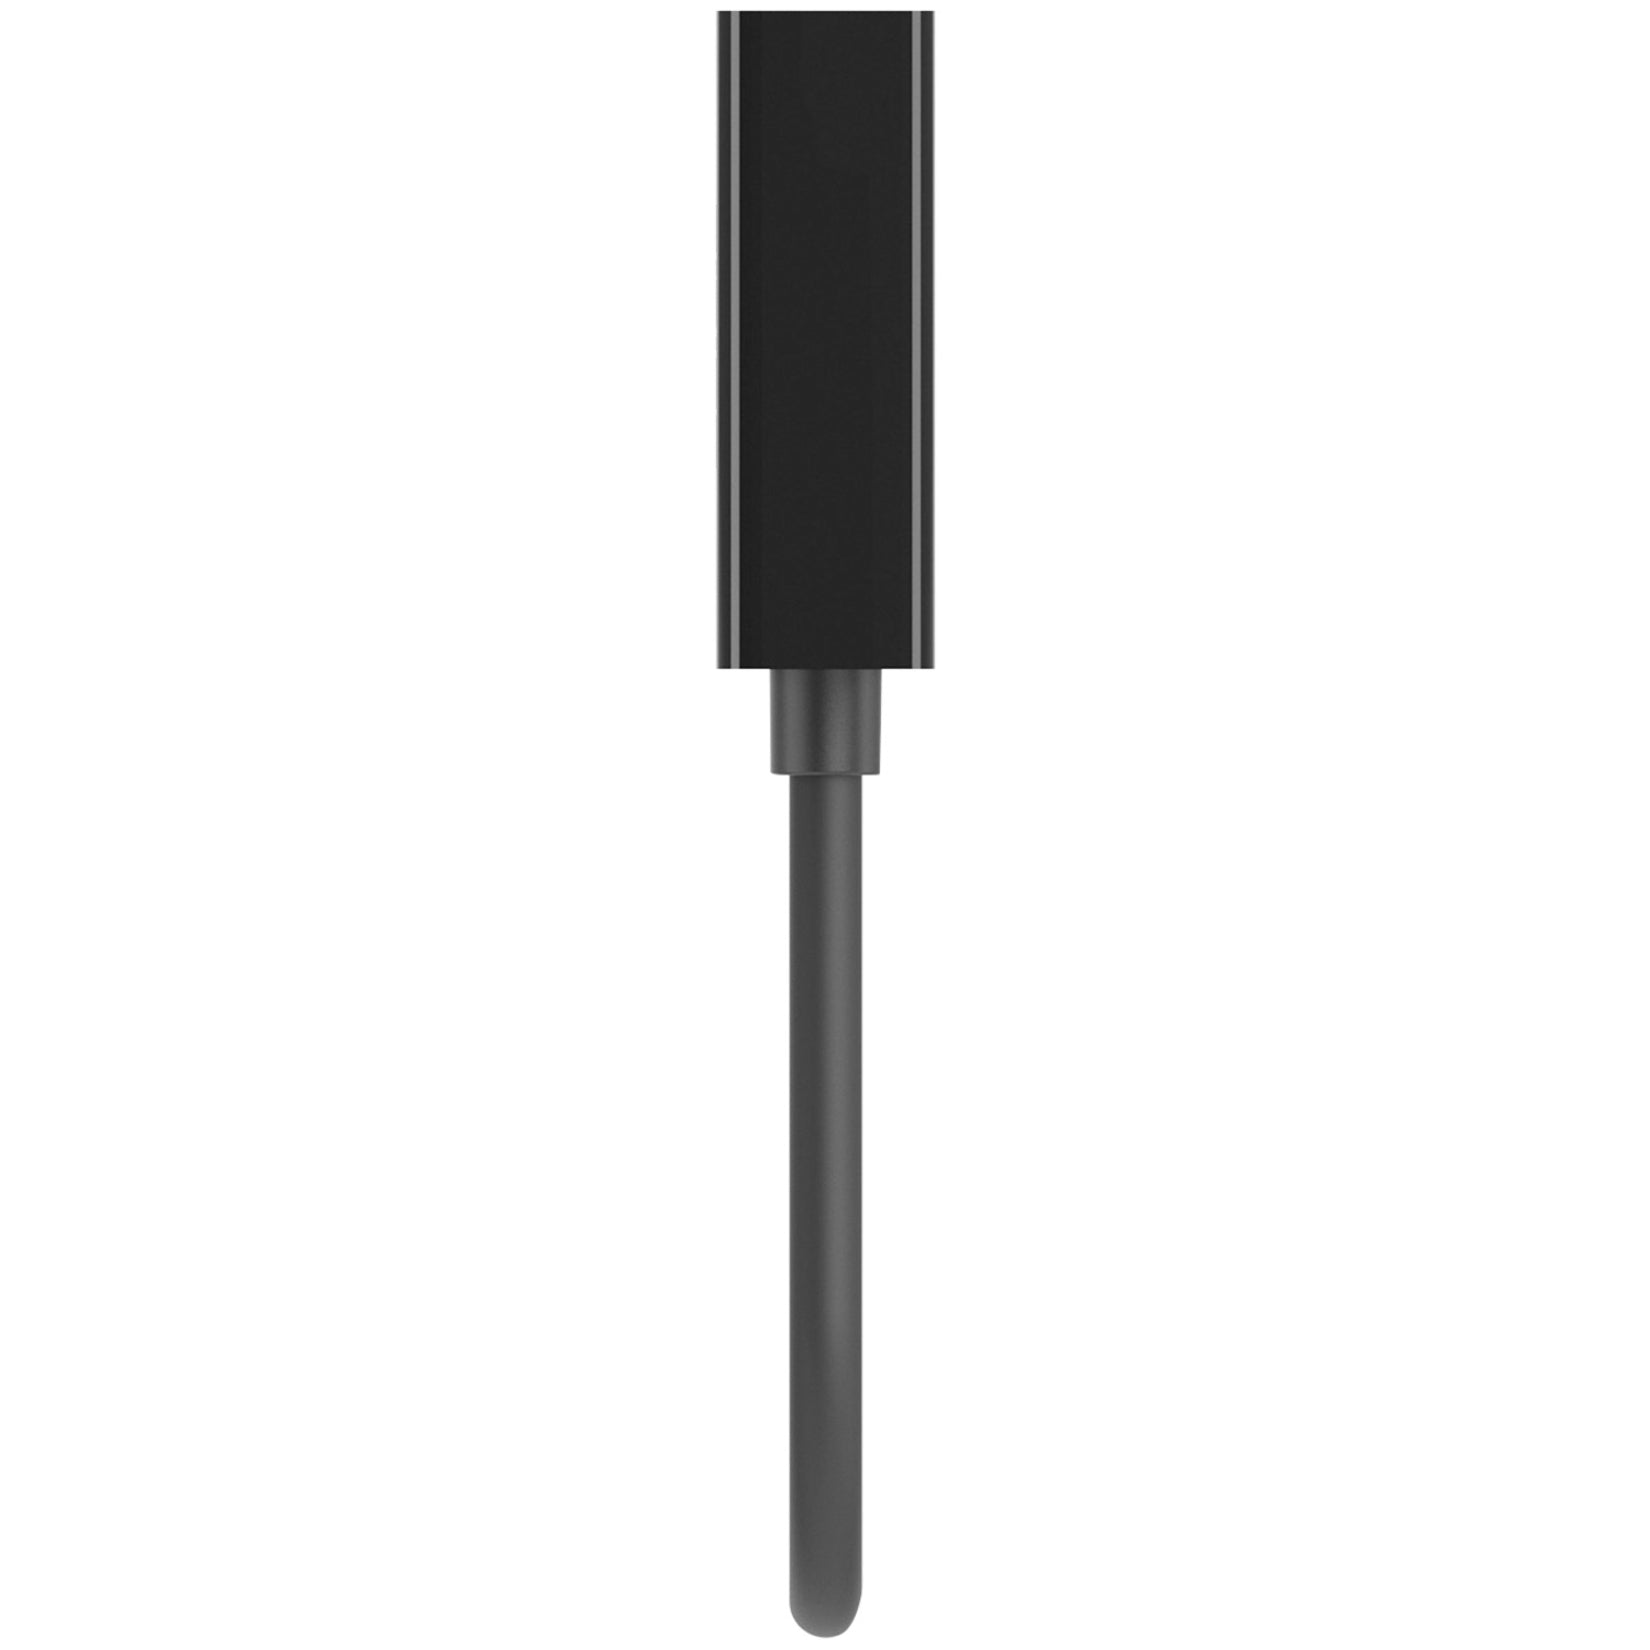 Belkin F2CD058 HDMI to VGA + 3.5mm Audio Adapter, HDMI-M/VGA-F, Black